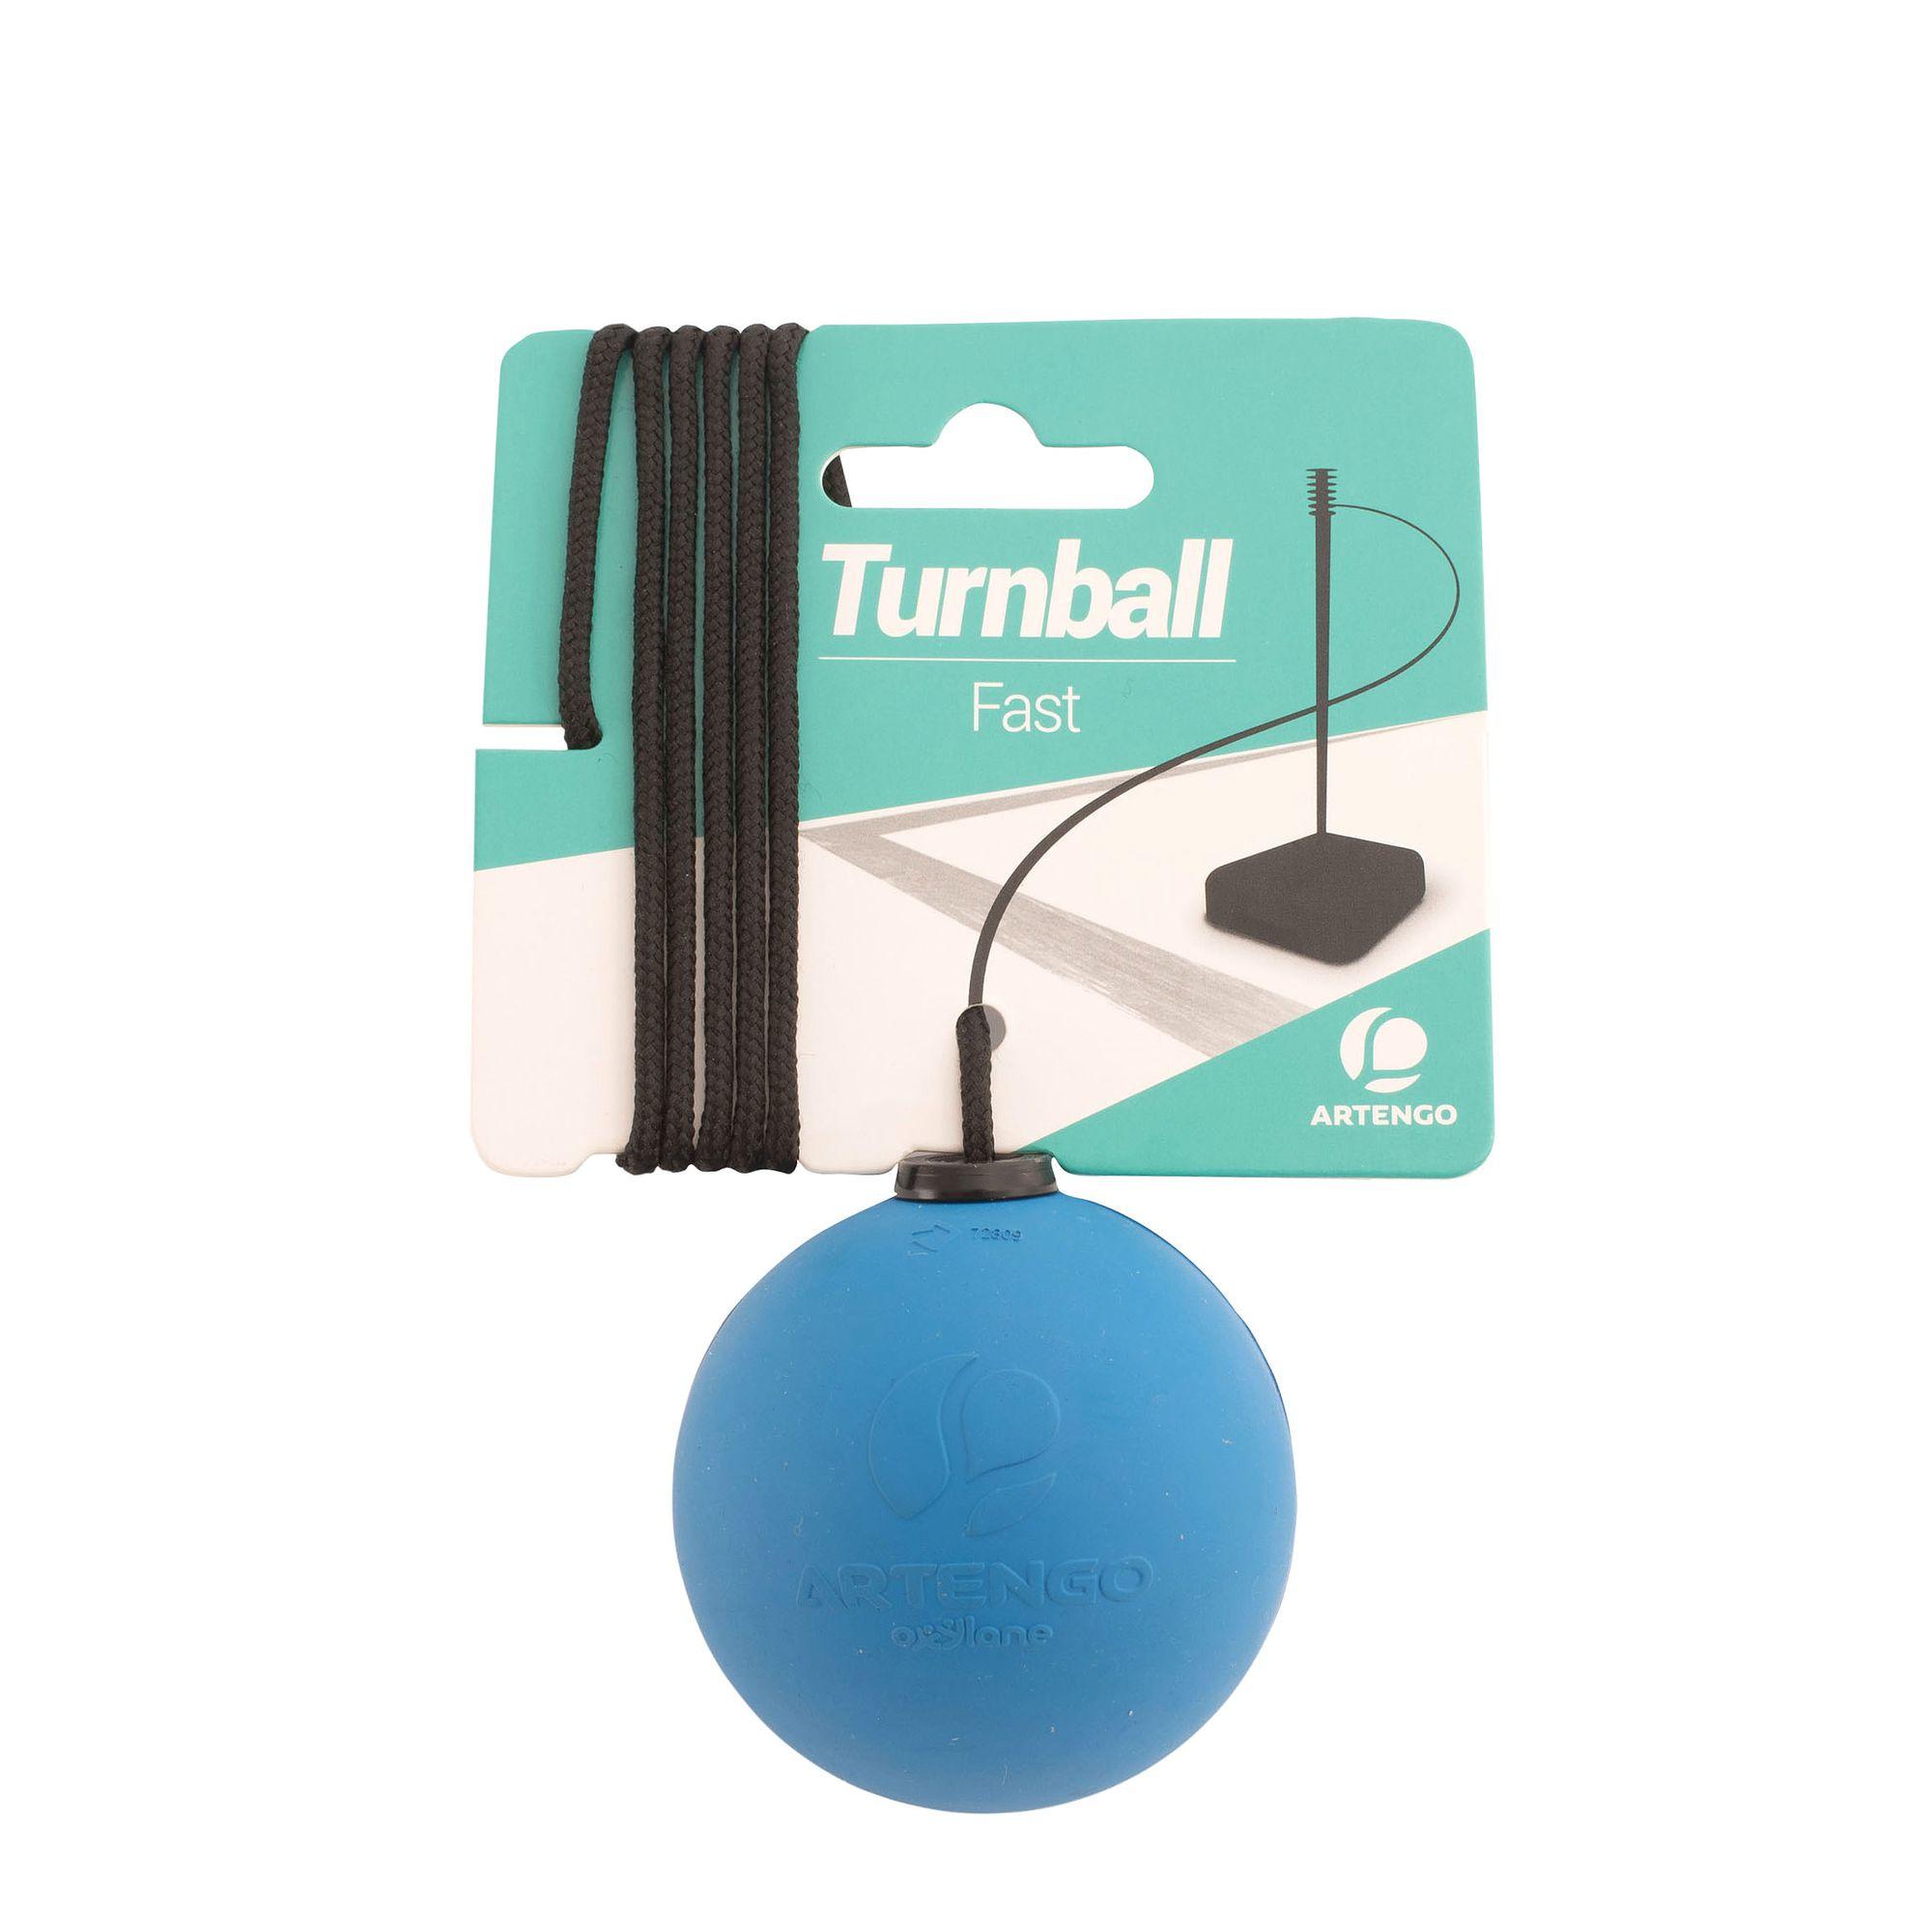 ARTENGO Turnball Speedball Fast Ball - Blue Rubber